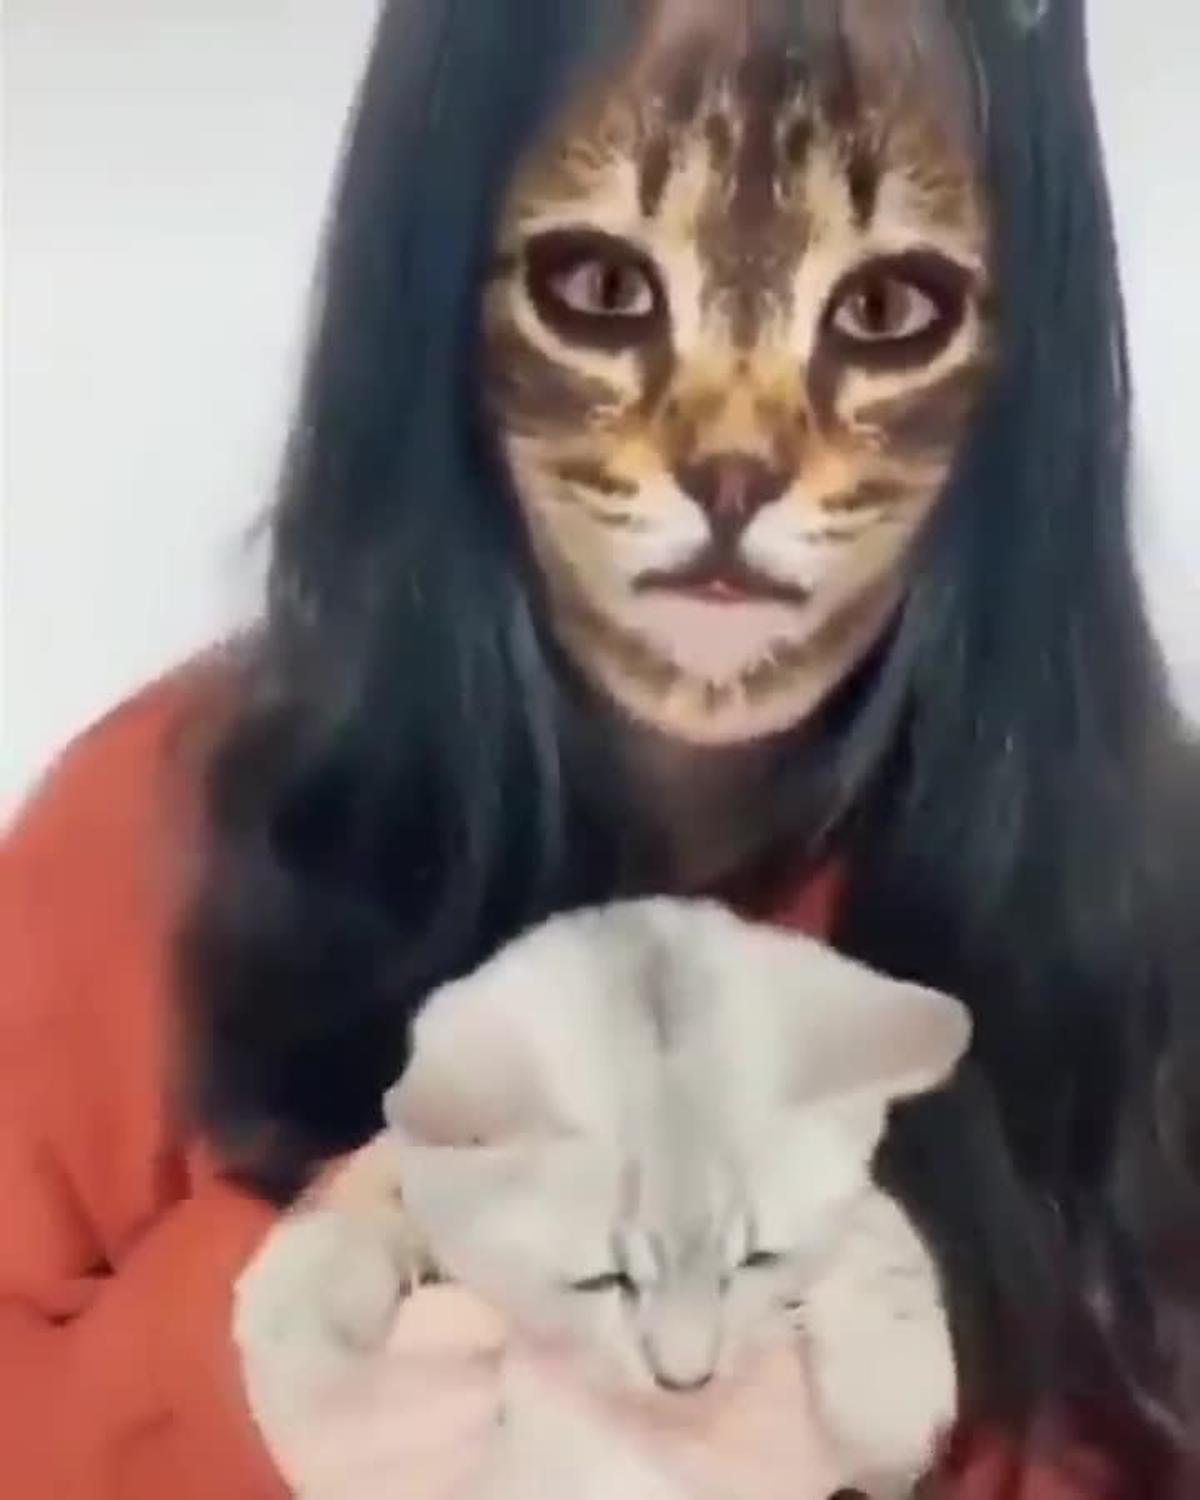 El viral de gatos reaccionando al de “cara de gato”